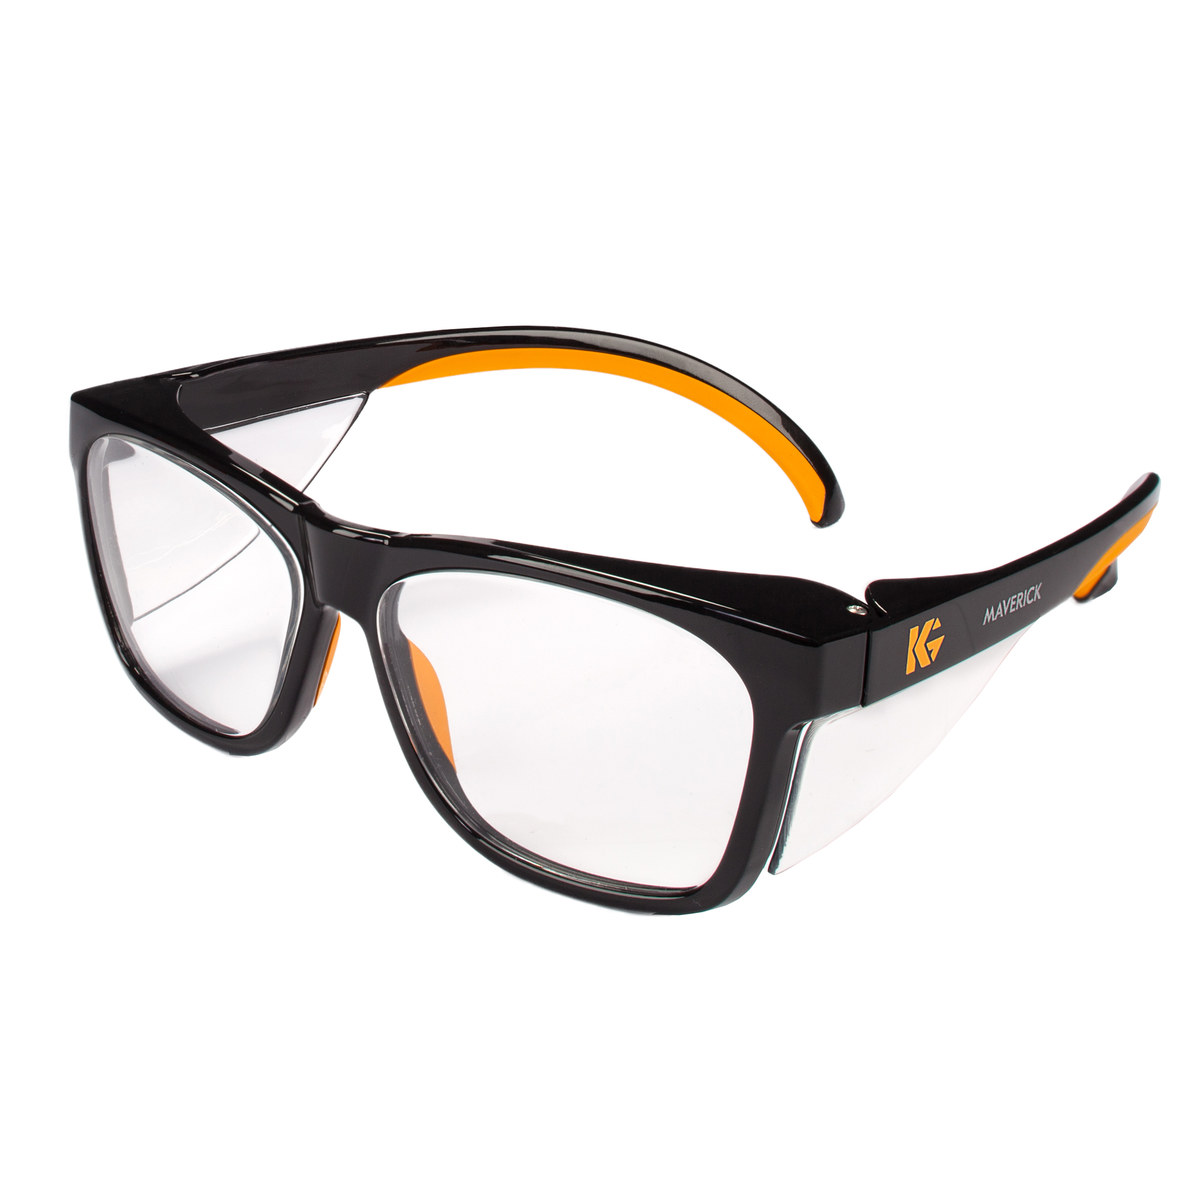 universal, Gafas protectoras gafas protección lateral seguridad páginas claras señales 